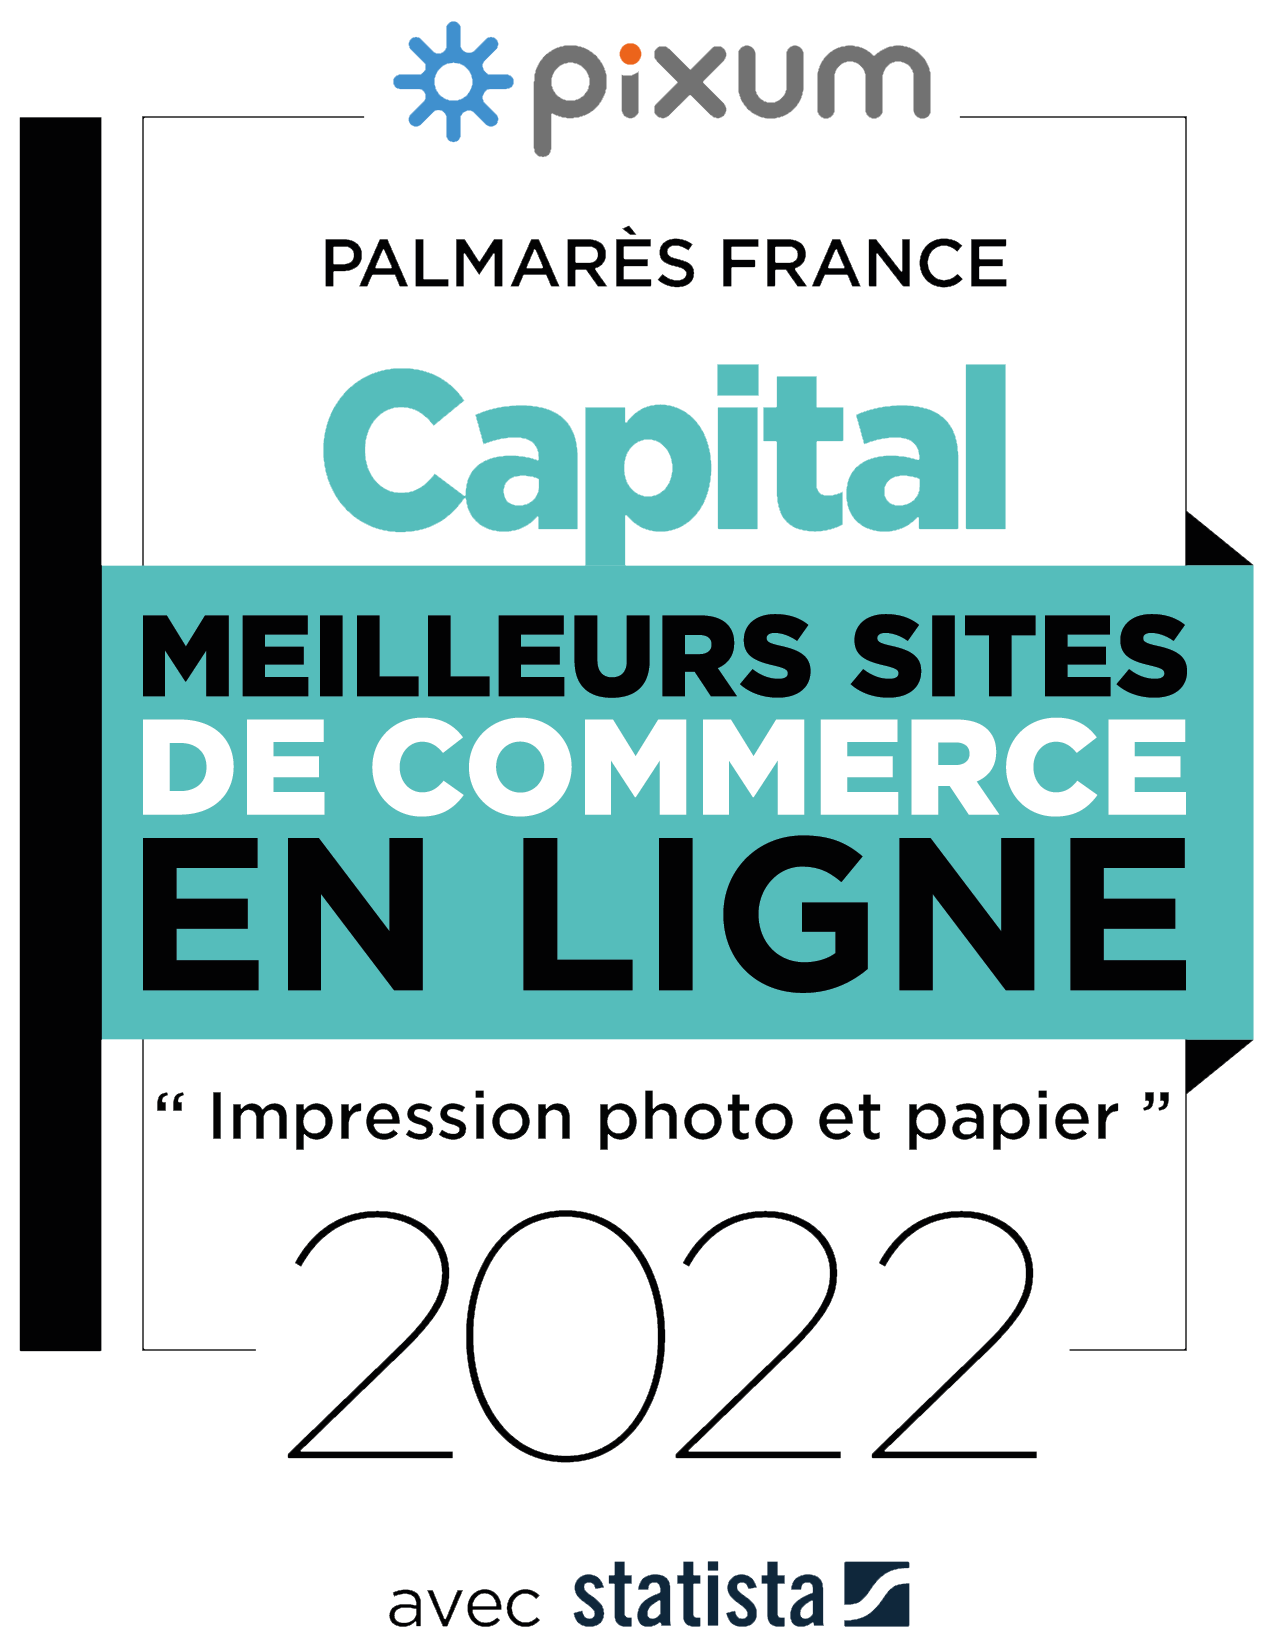 Pixum a été élu meilleur site de e-commerce pour "l'impression photo & papier" en 2022